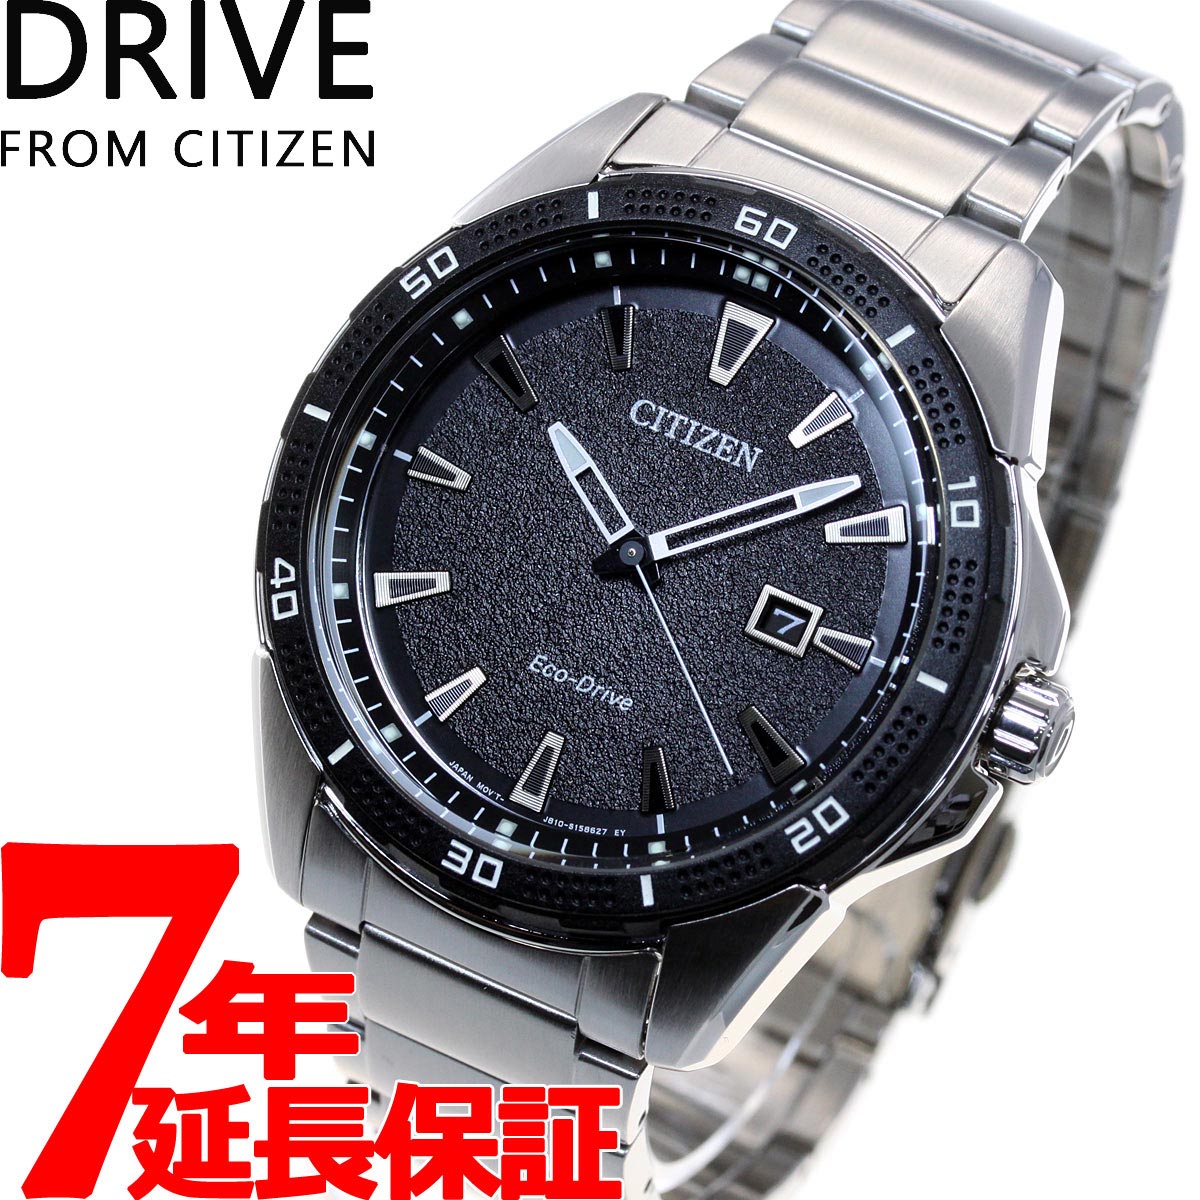 DRIVE FROM CITIZEN ドライブ フロム シチズン エコドライブ 腕時計 メンズ メタル AW1588-57E